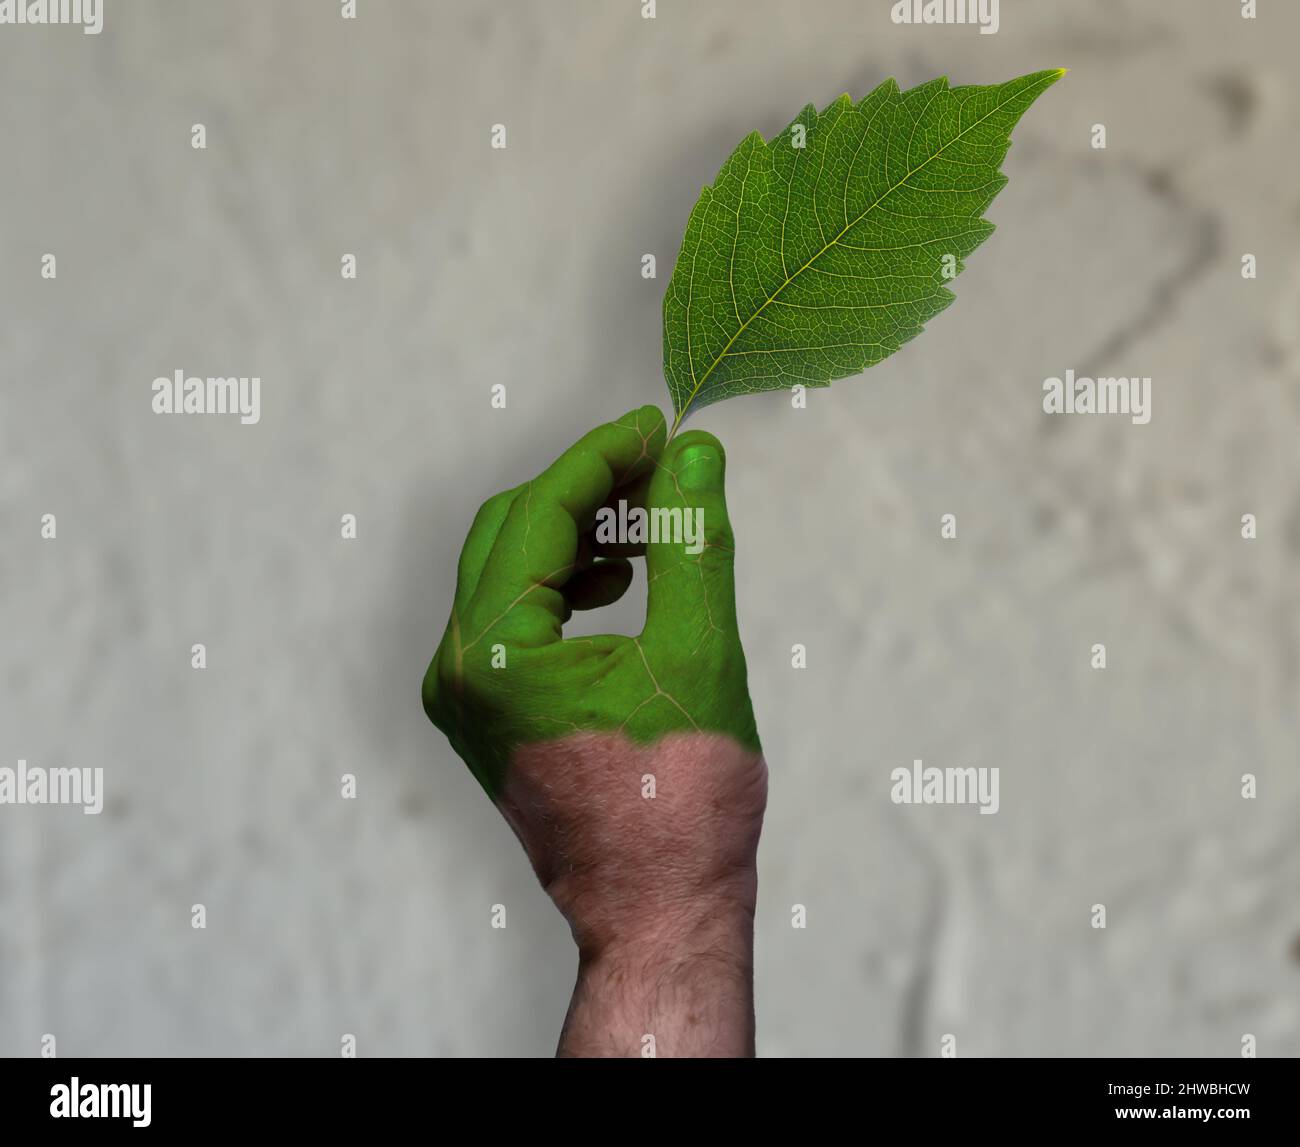 Grünwaschen: Eine teilweise bemalte Hand mit der Textur eines Blattes hält ein Blatt vor einem konkreten Hintergrund. Nicht alles, was 'grün' ist, ist enviro Stockfoto